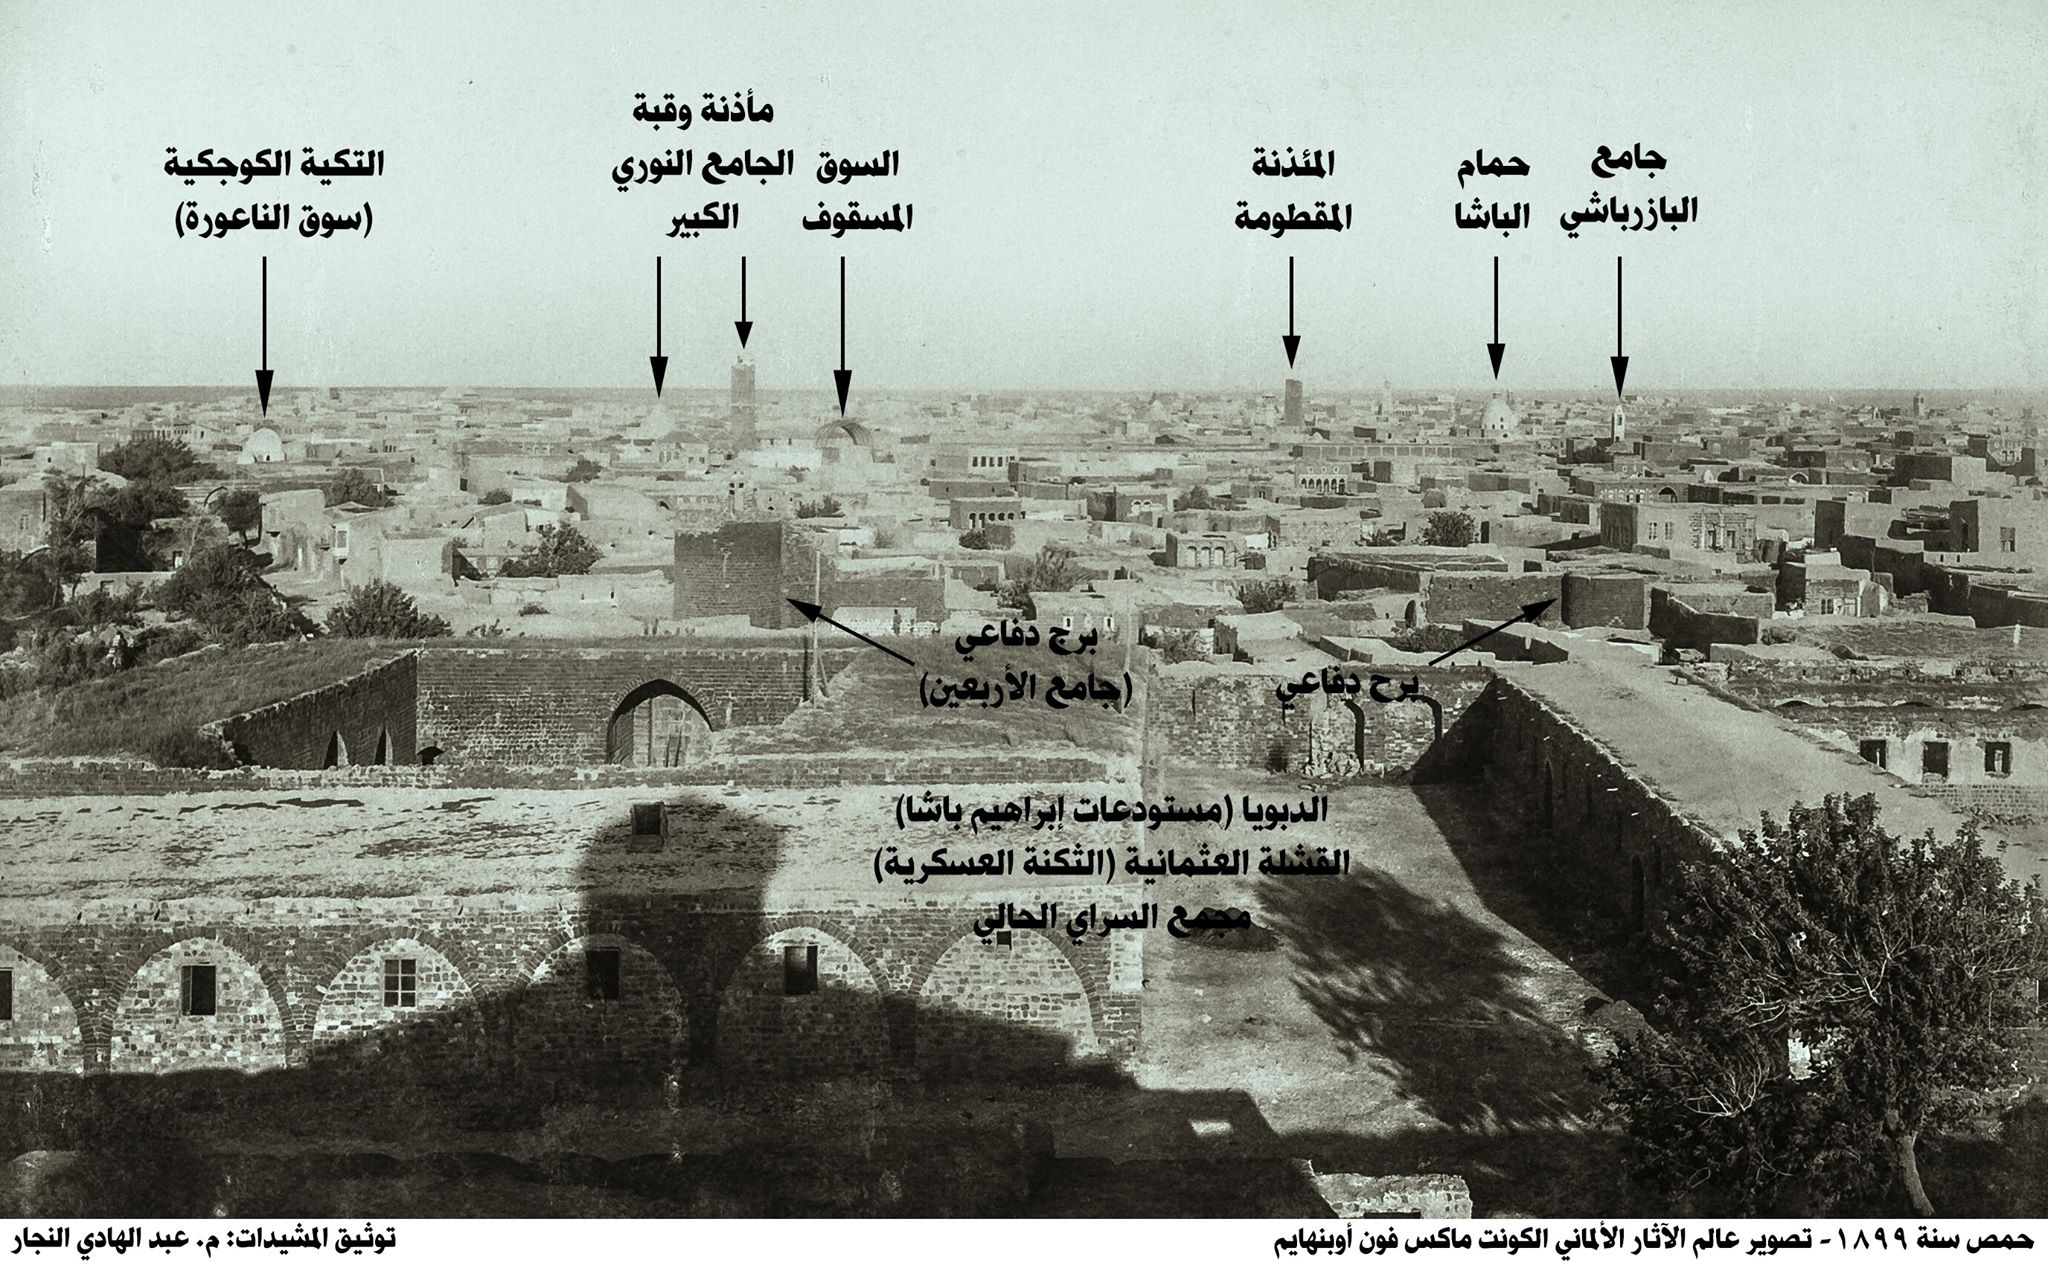 مدينة حمص سنة 1899 من تصوير ماكس فون أوبنهايم 2 التاريخ السوري المعاصر